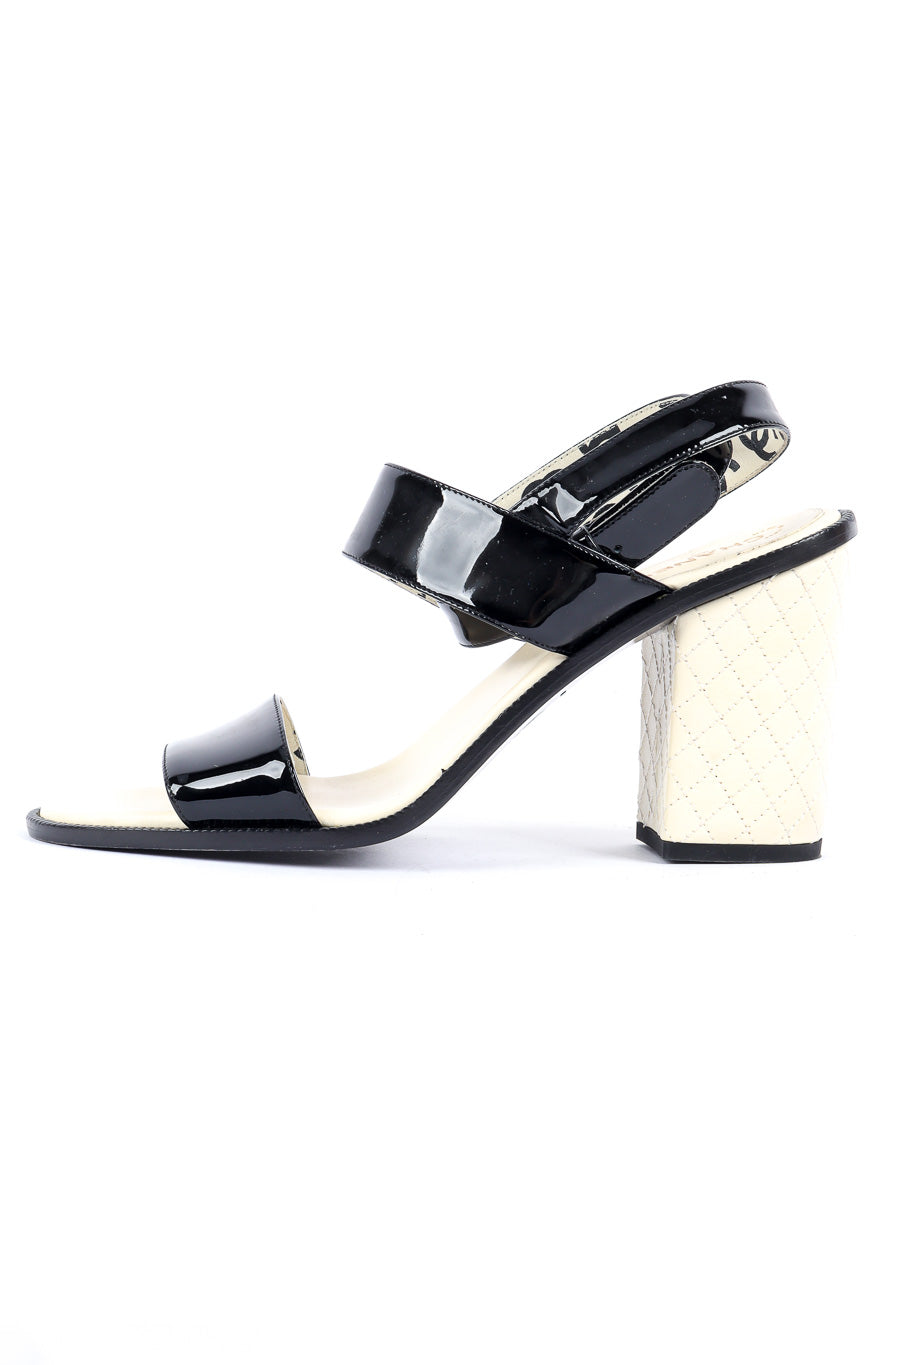 Chanel patent leather wrap sandal product shot @recessla